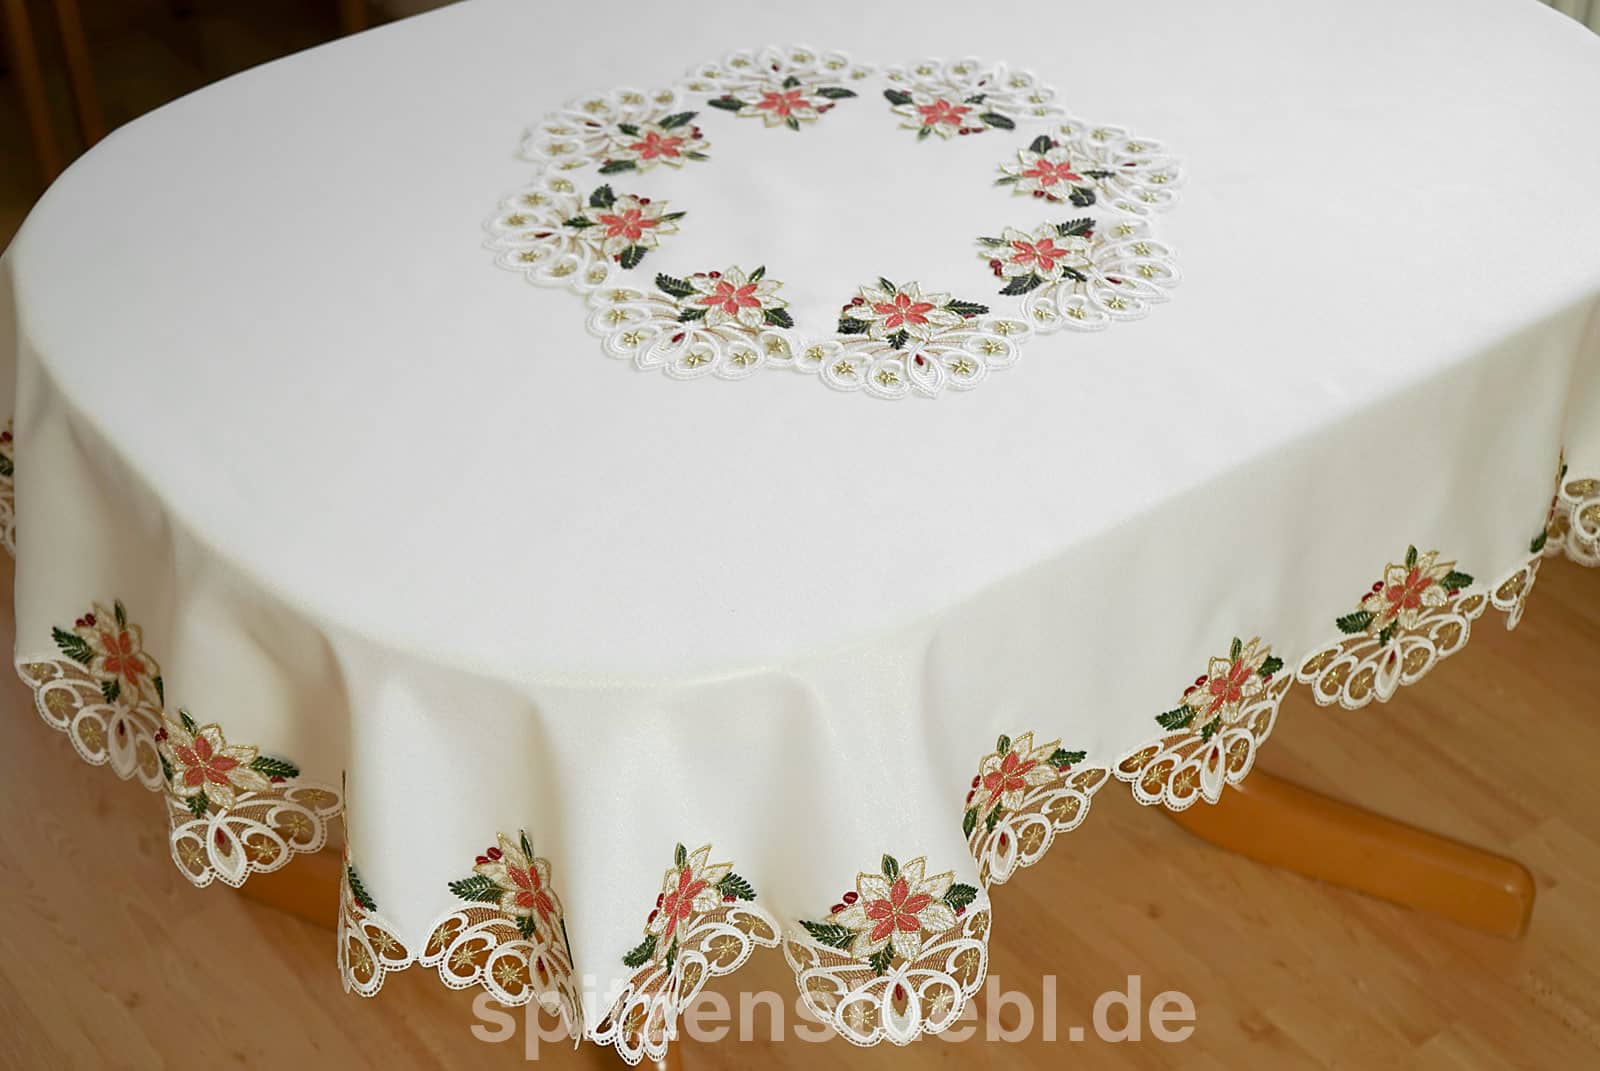 Sonderanfertigung große ovale Weihnachtstischdecke aus Plauener Spitze  Tischdecke nach Maß